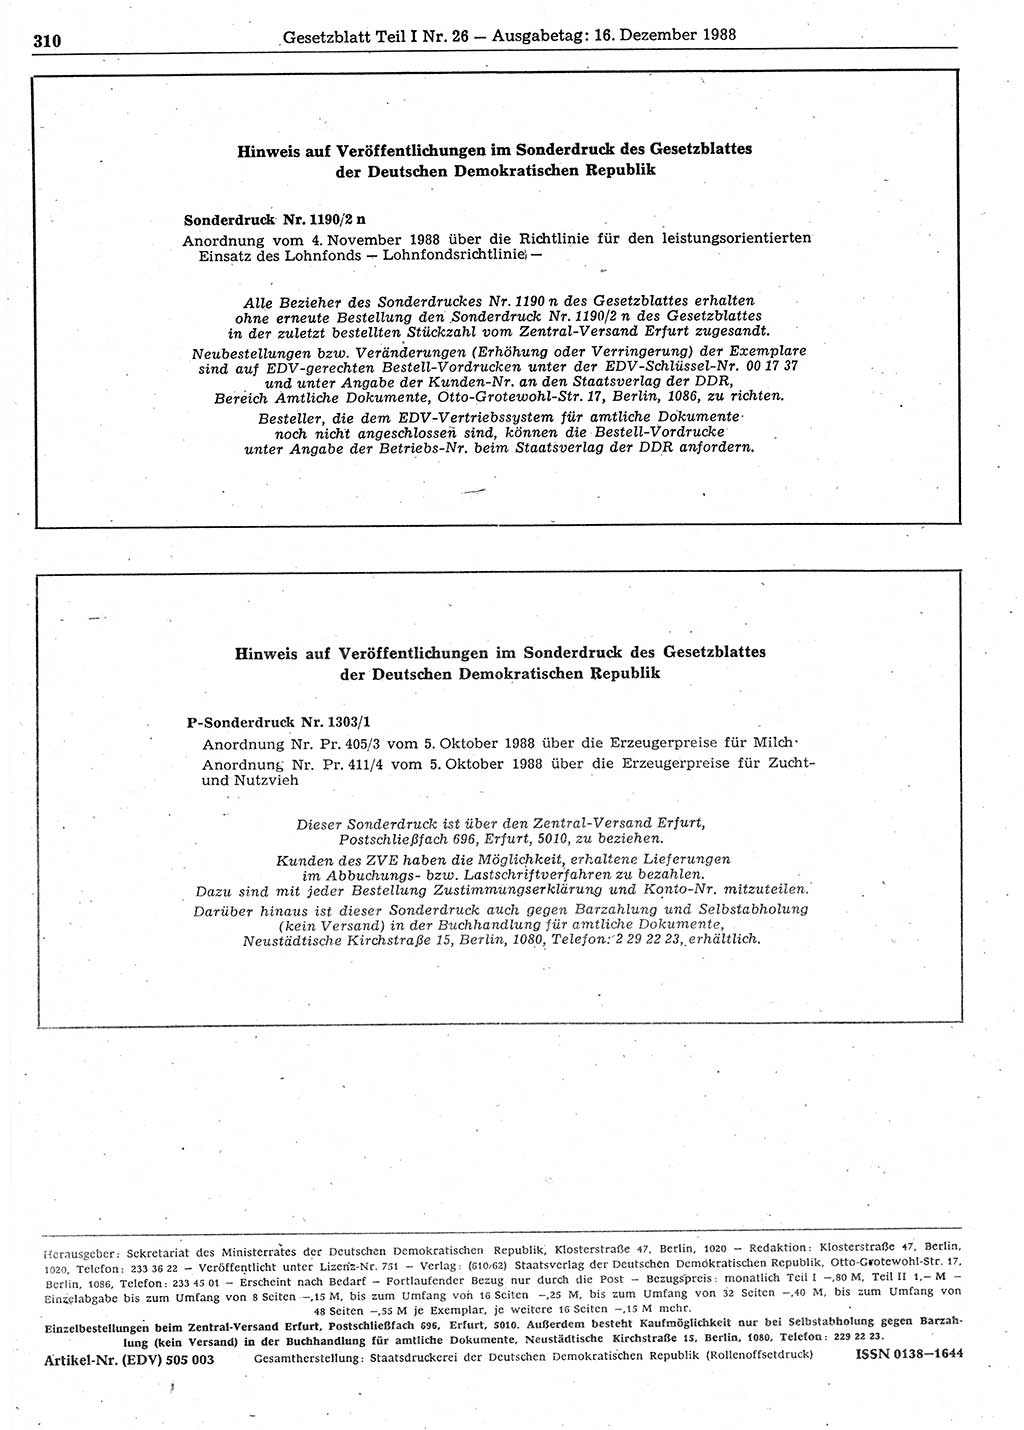 Gesetzblatt (GBl.) der Deutschen Demokratischen Republik (DDR) Teil Ⅰ 1988, Seite 310 (GBl. DDR Ⅰ 1988, S. 310)